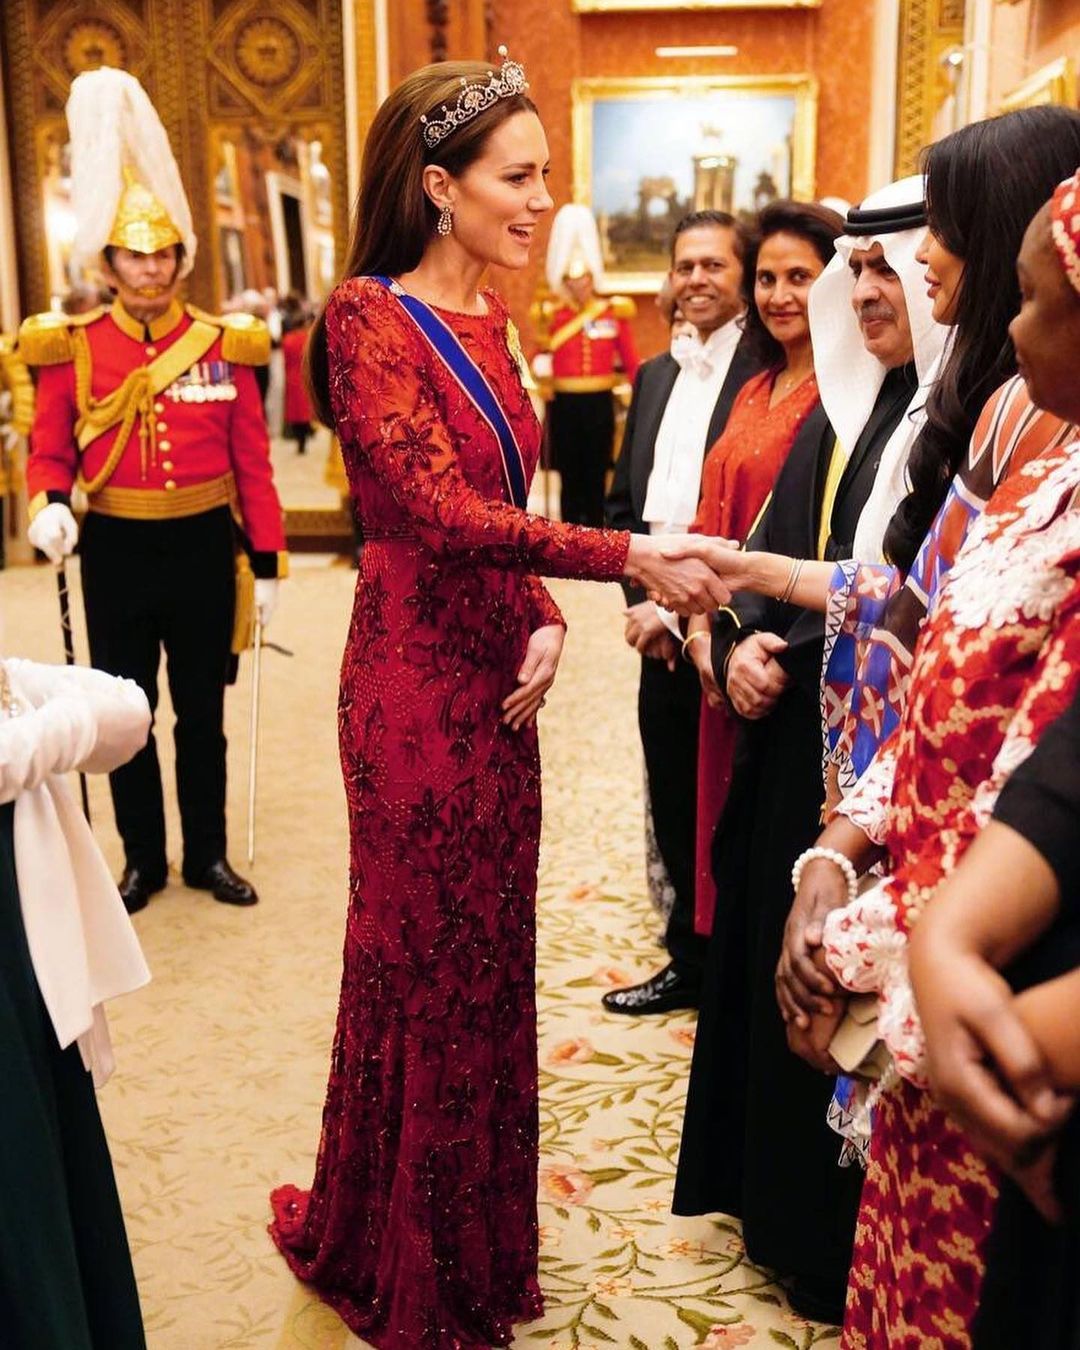 Сучасна принцеса: Кейт Міддлтон у тіарі та діамантах королеви провела прийом у замку